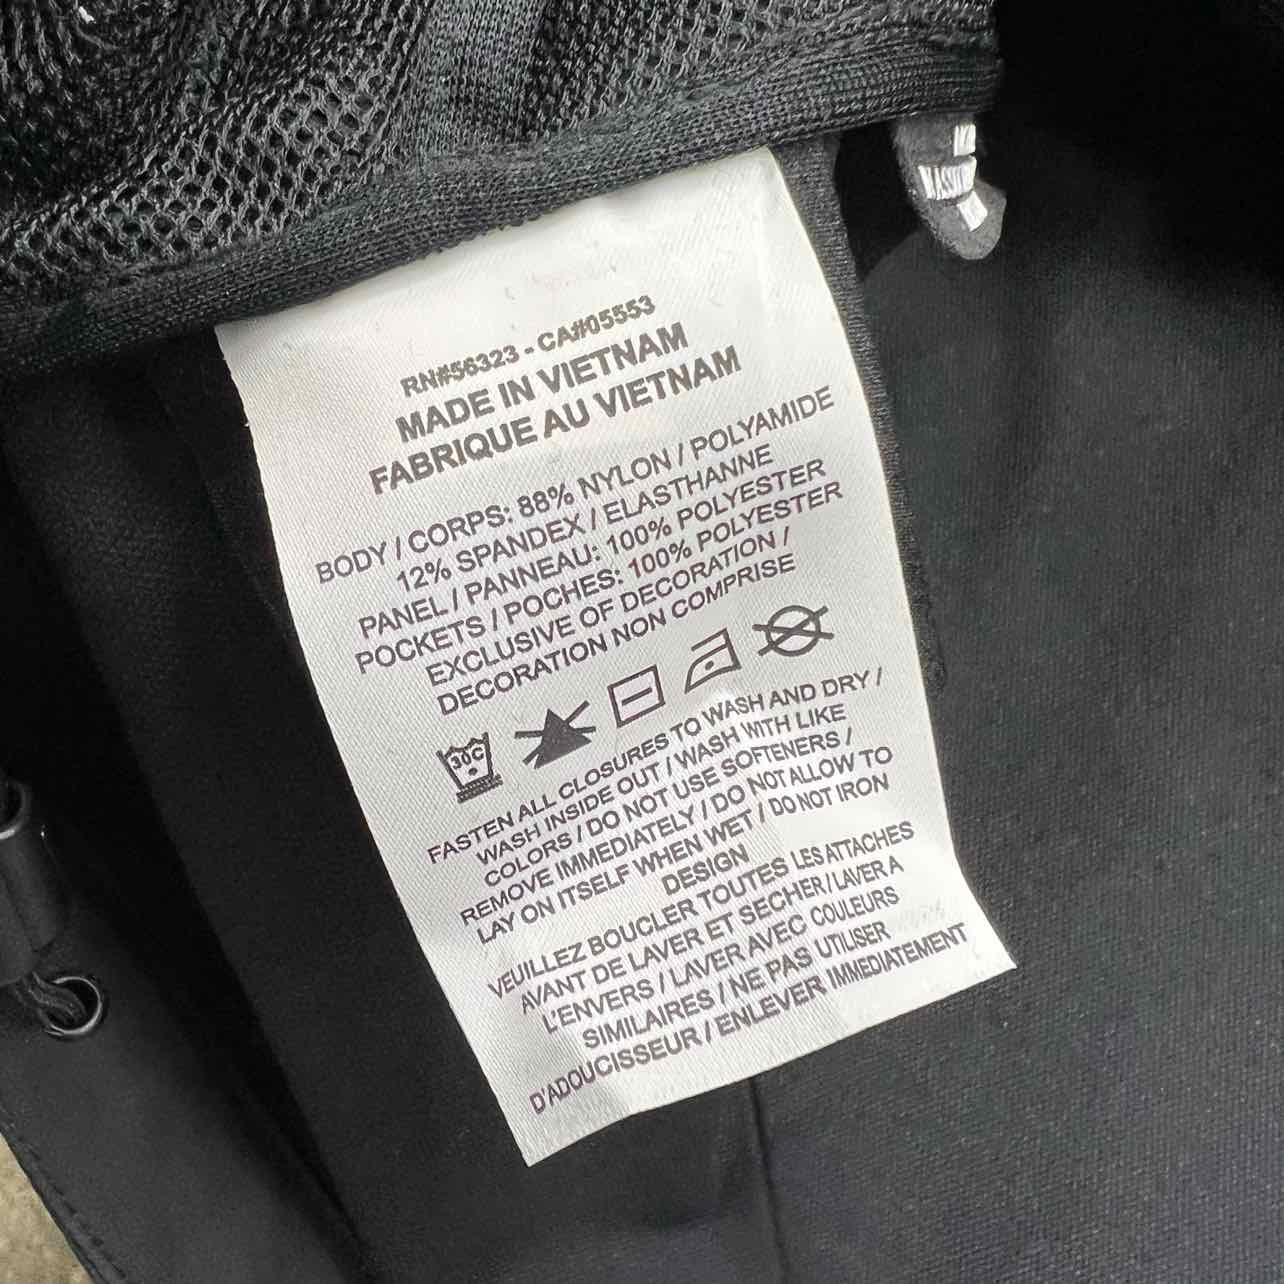 Nike Vest &quot;NOCTA GOLF&quot; Black New Size 2XL